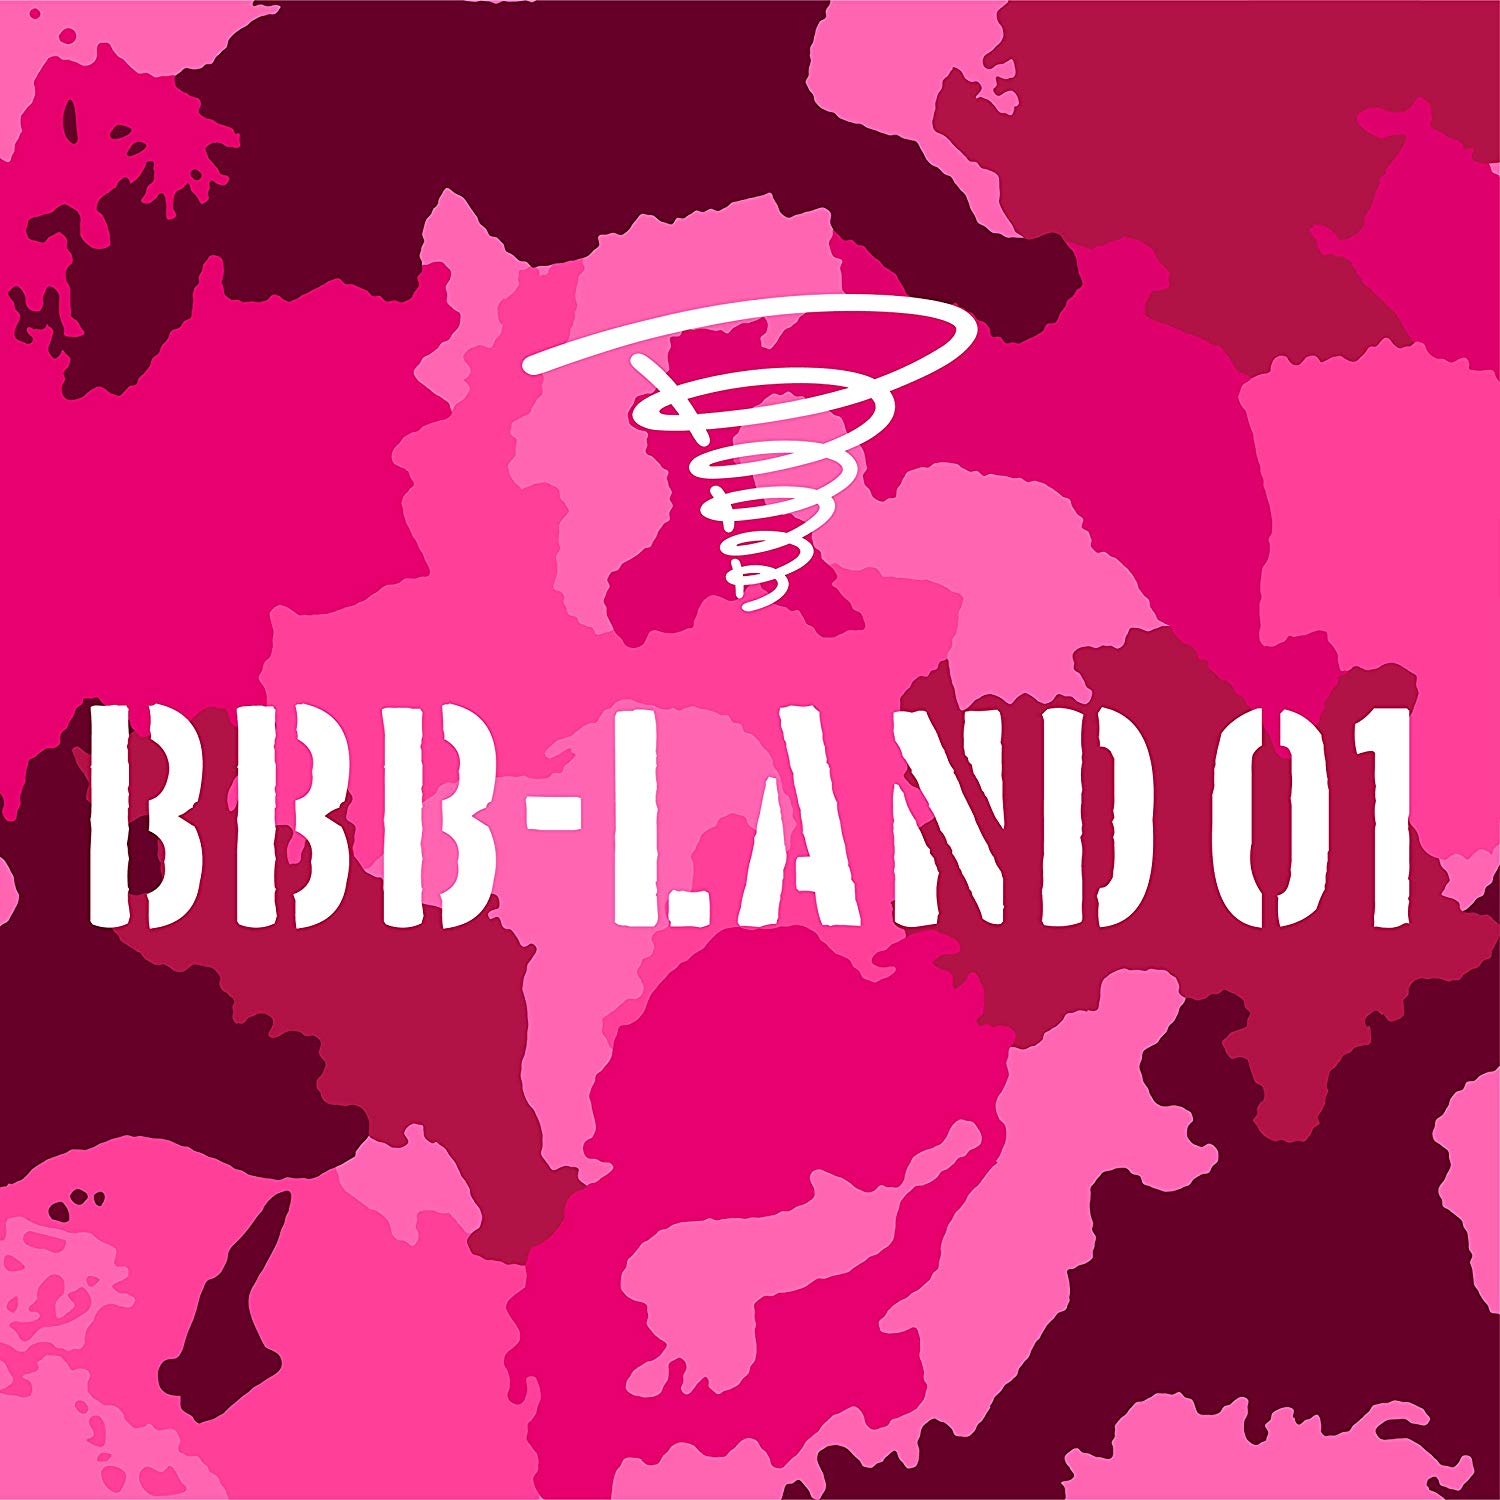 BBB-LAND1